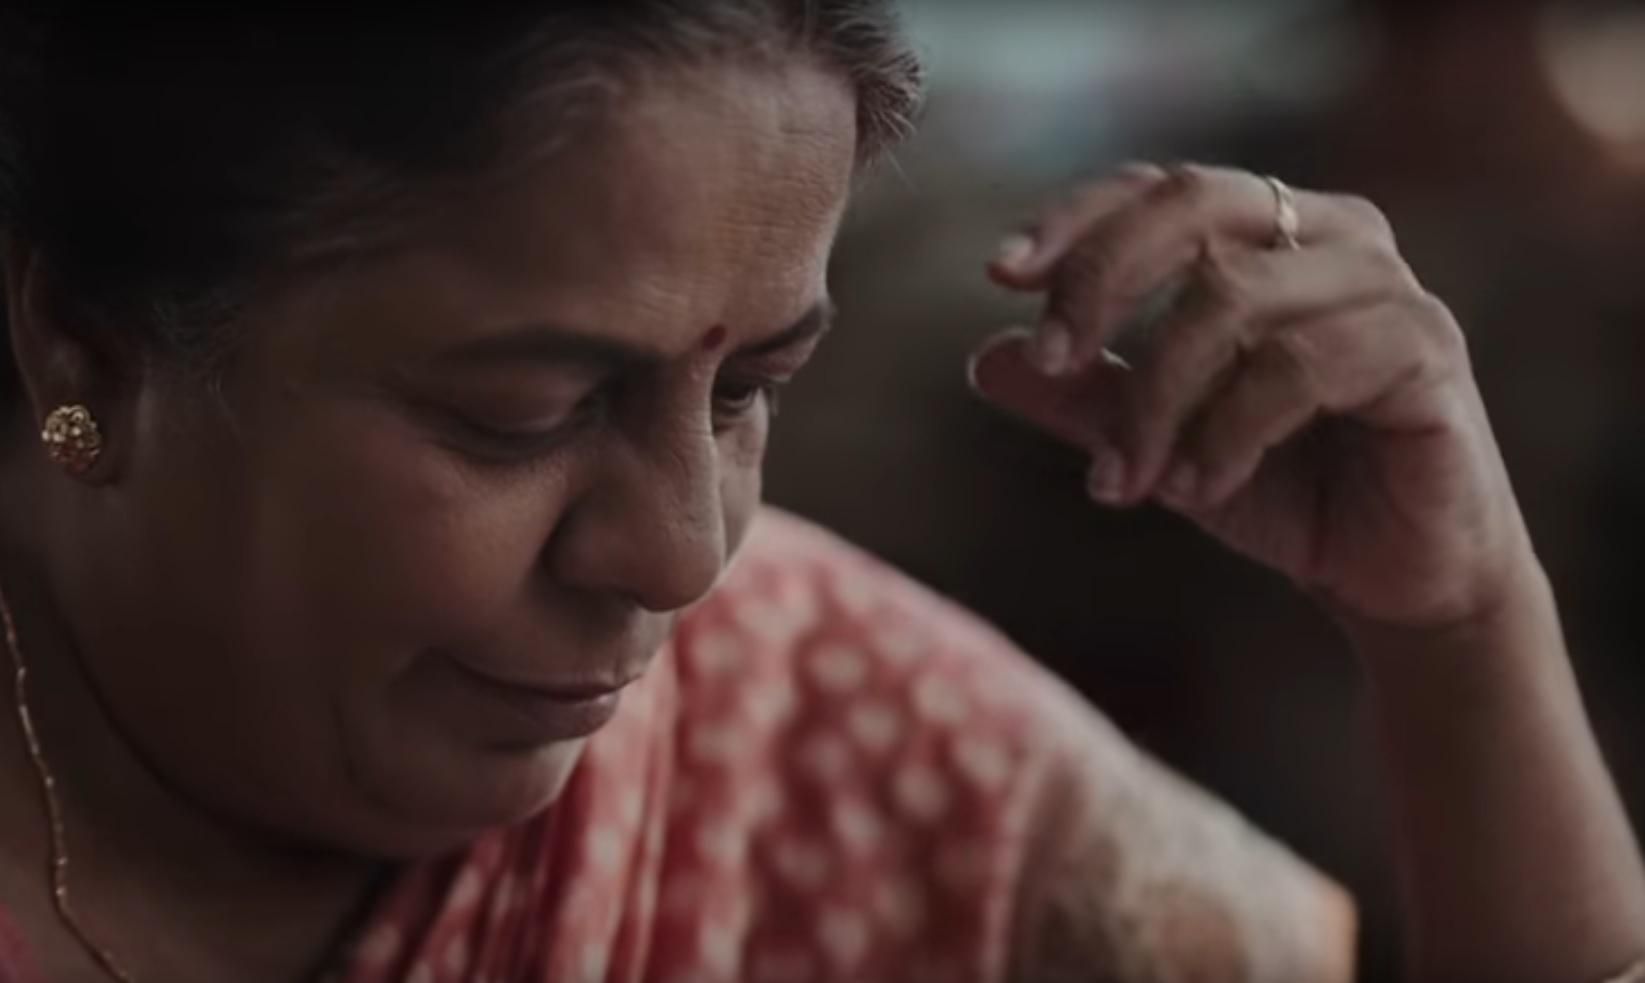 Забытые: трогательное видео призывает заботиться об одиноких и брошенных